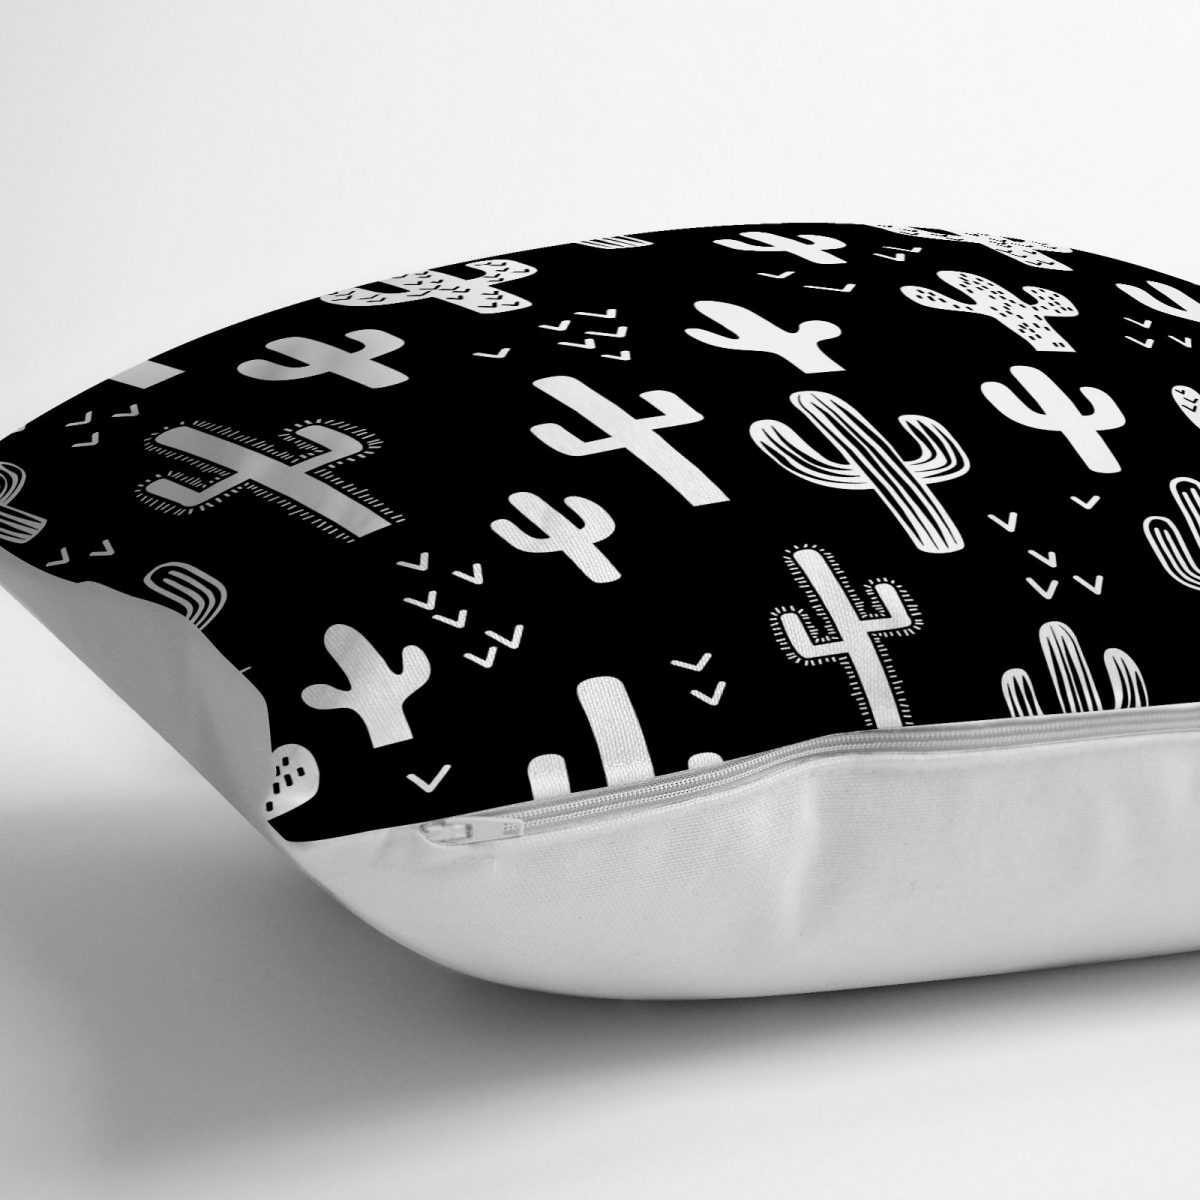 Siyah Beyaz Kaktüs Baskılı Dekoratif Yer Minderi - 70 x 70 cm Realhomes